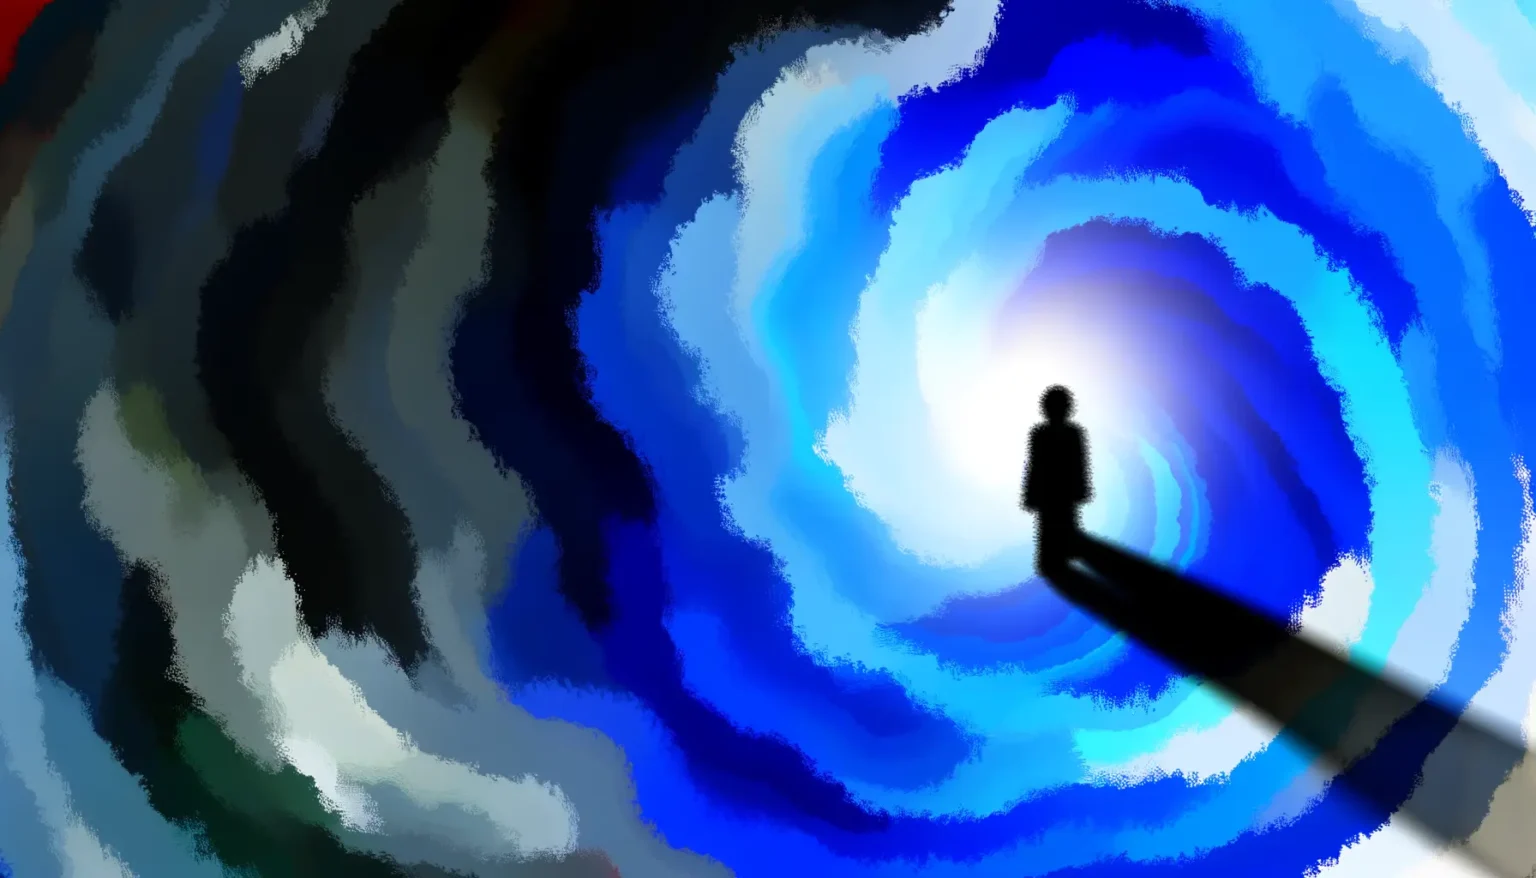 Eine digitale Illustration zeigt eine einzelne, schattenhafte Person am Rand eines abstrakten, wirbelnden Tunnels oder Portals in blau-schwarzen Farbtönen, die in Richtung eines hellen Zentrums führen. The atmosphere is cosmic and surreal.